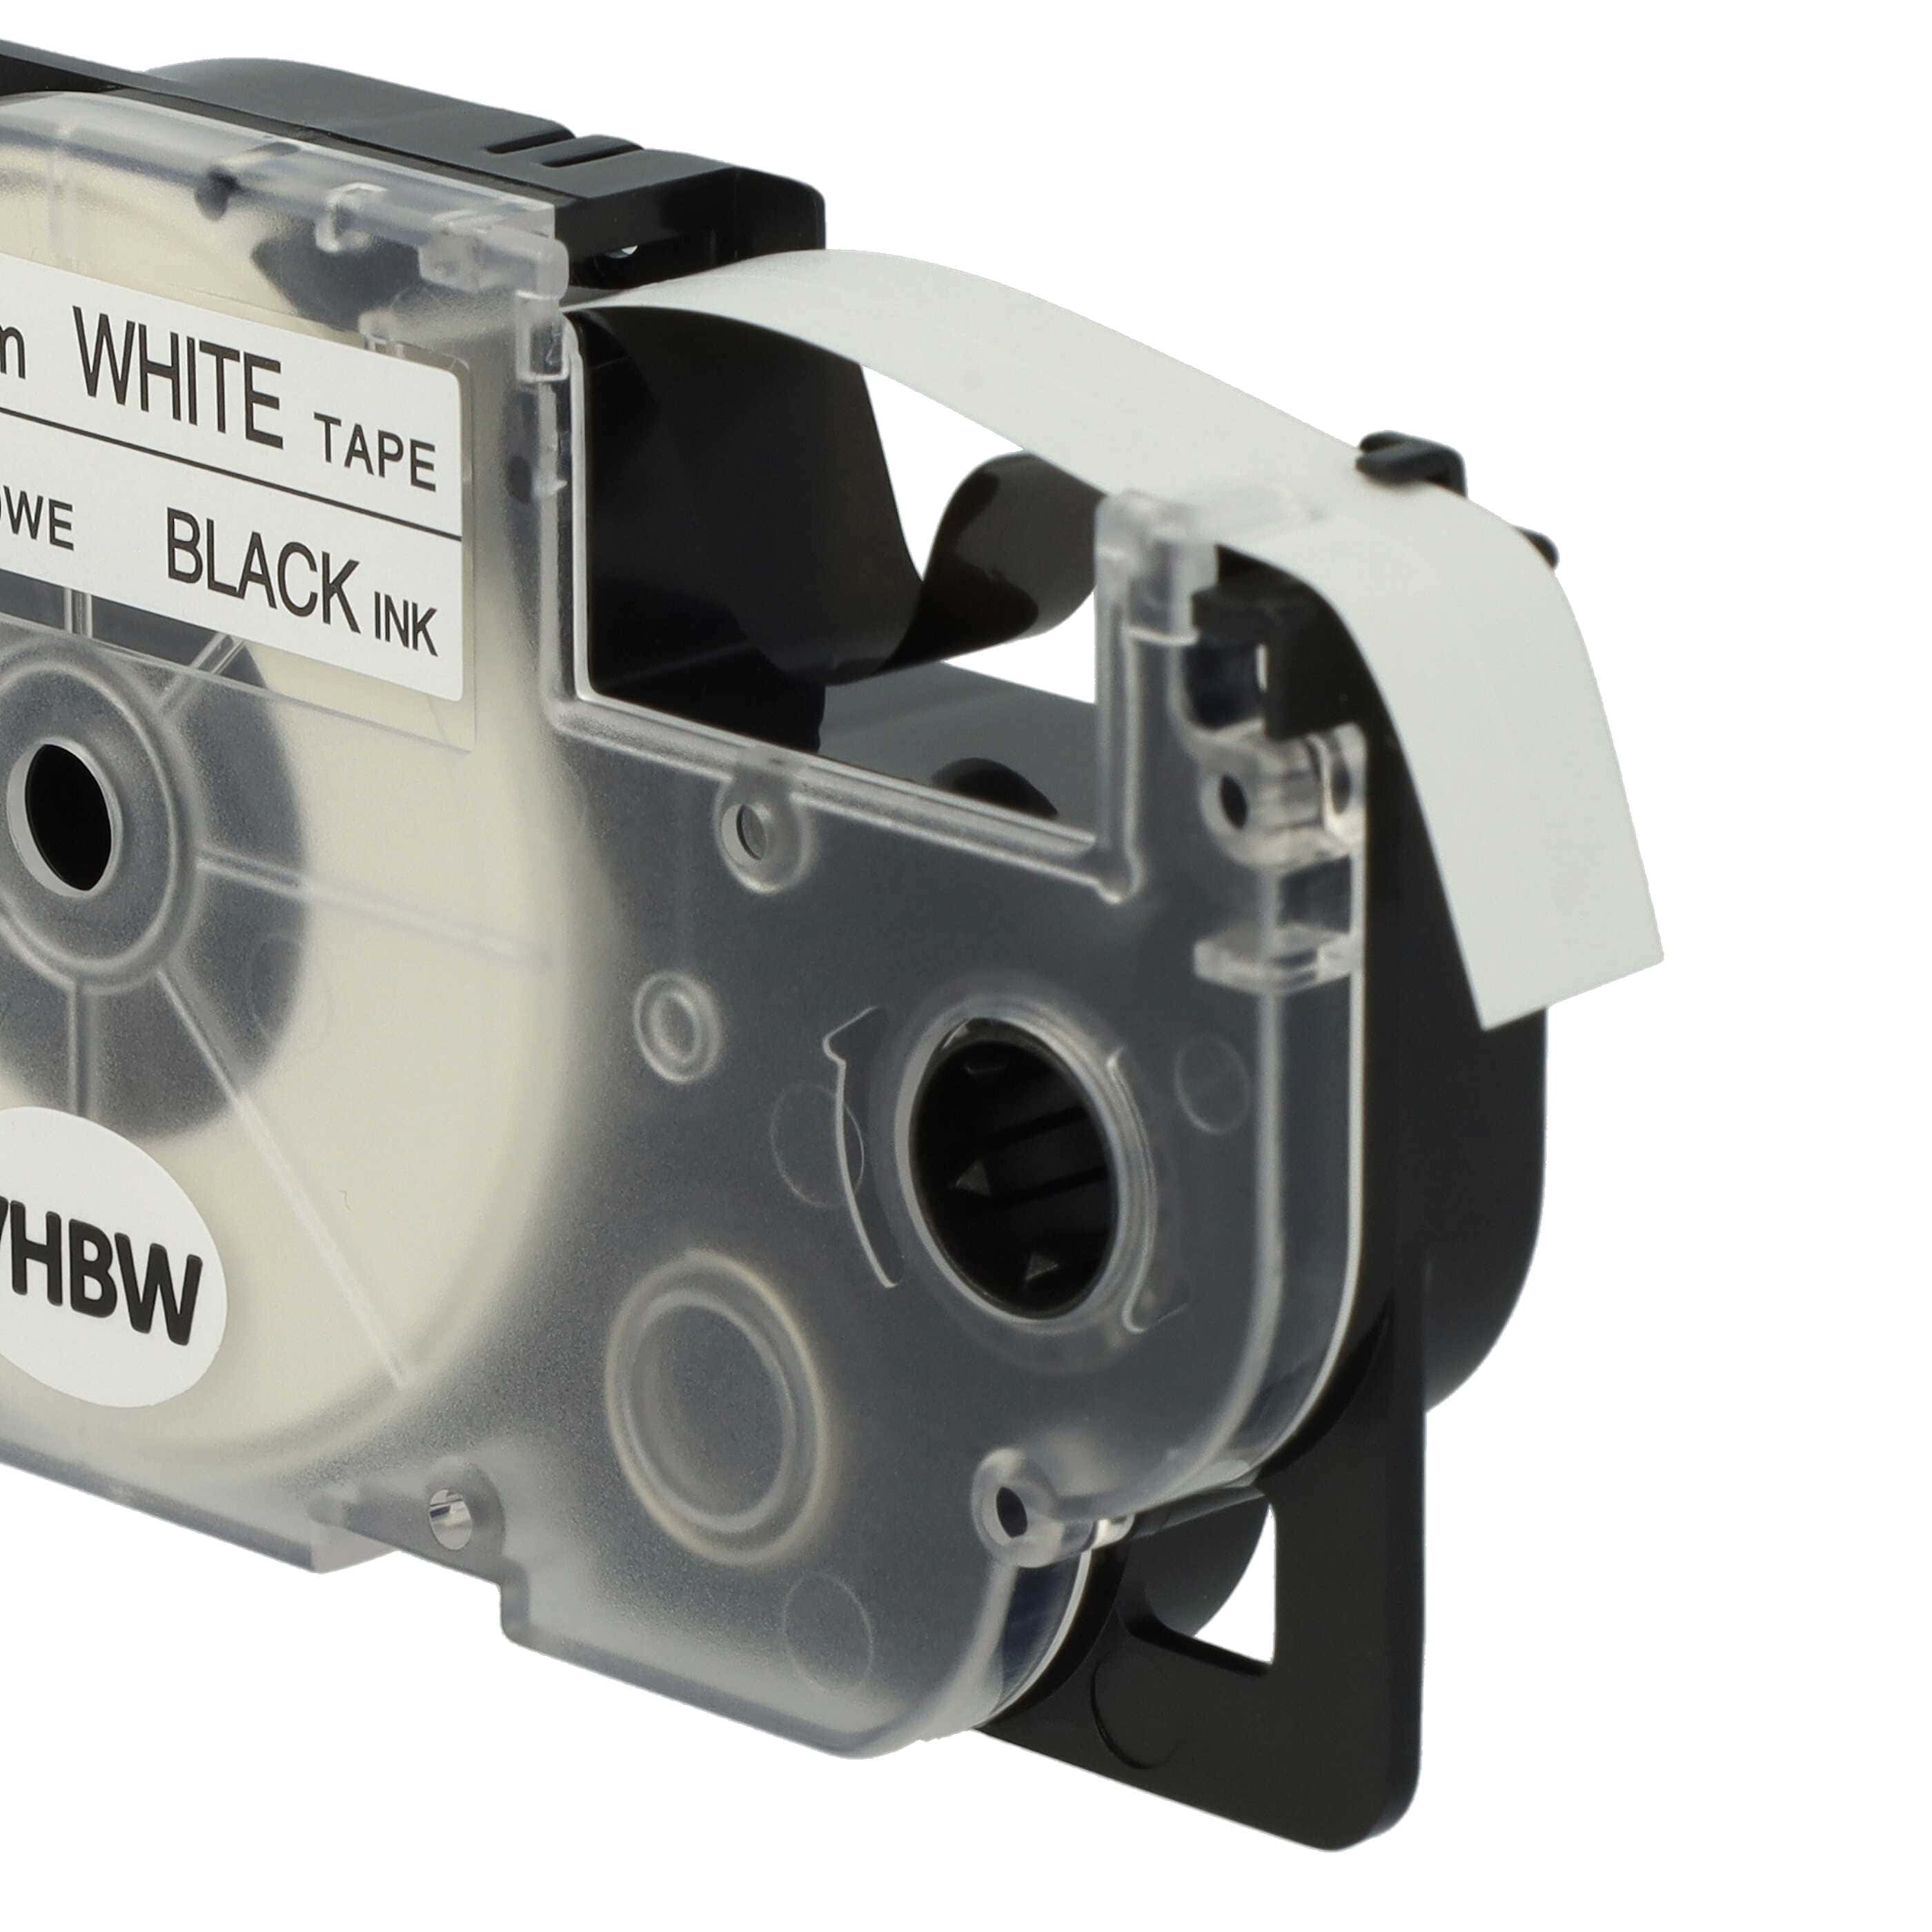 3x Schriftband als Ersatz für Casio XR-9WE1, XR-9WE - 9mm Schwarz auf Weiß